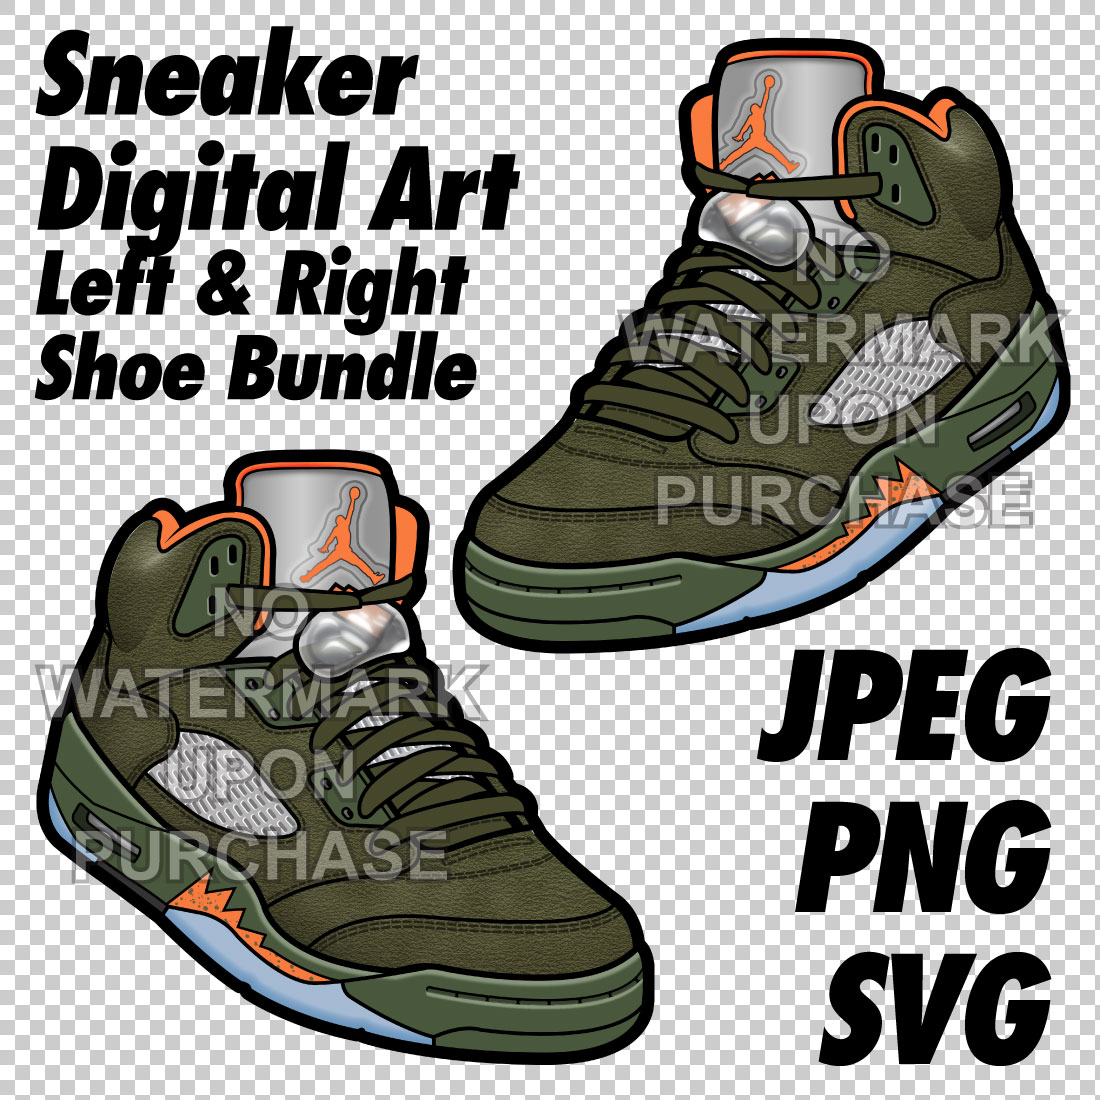 Air Jordan 5 Olive JPEG PNG SVG right & left shoe bundle cover image.